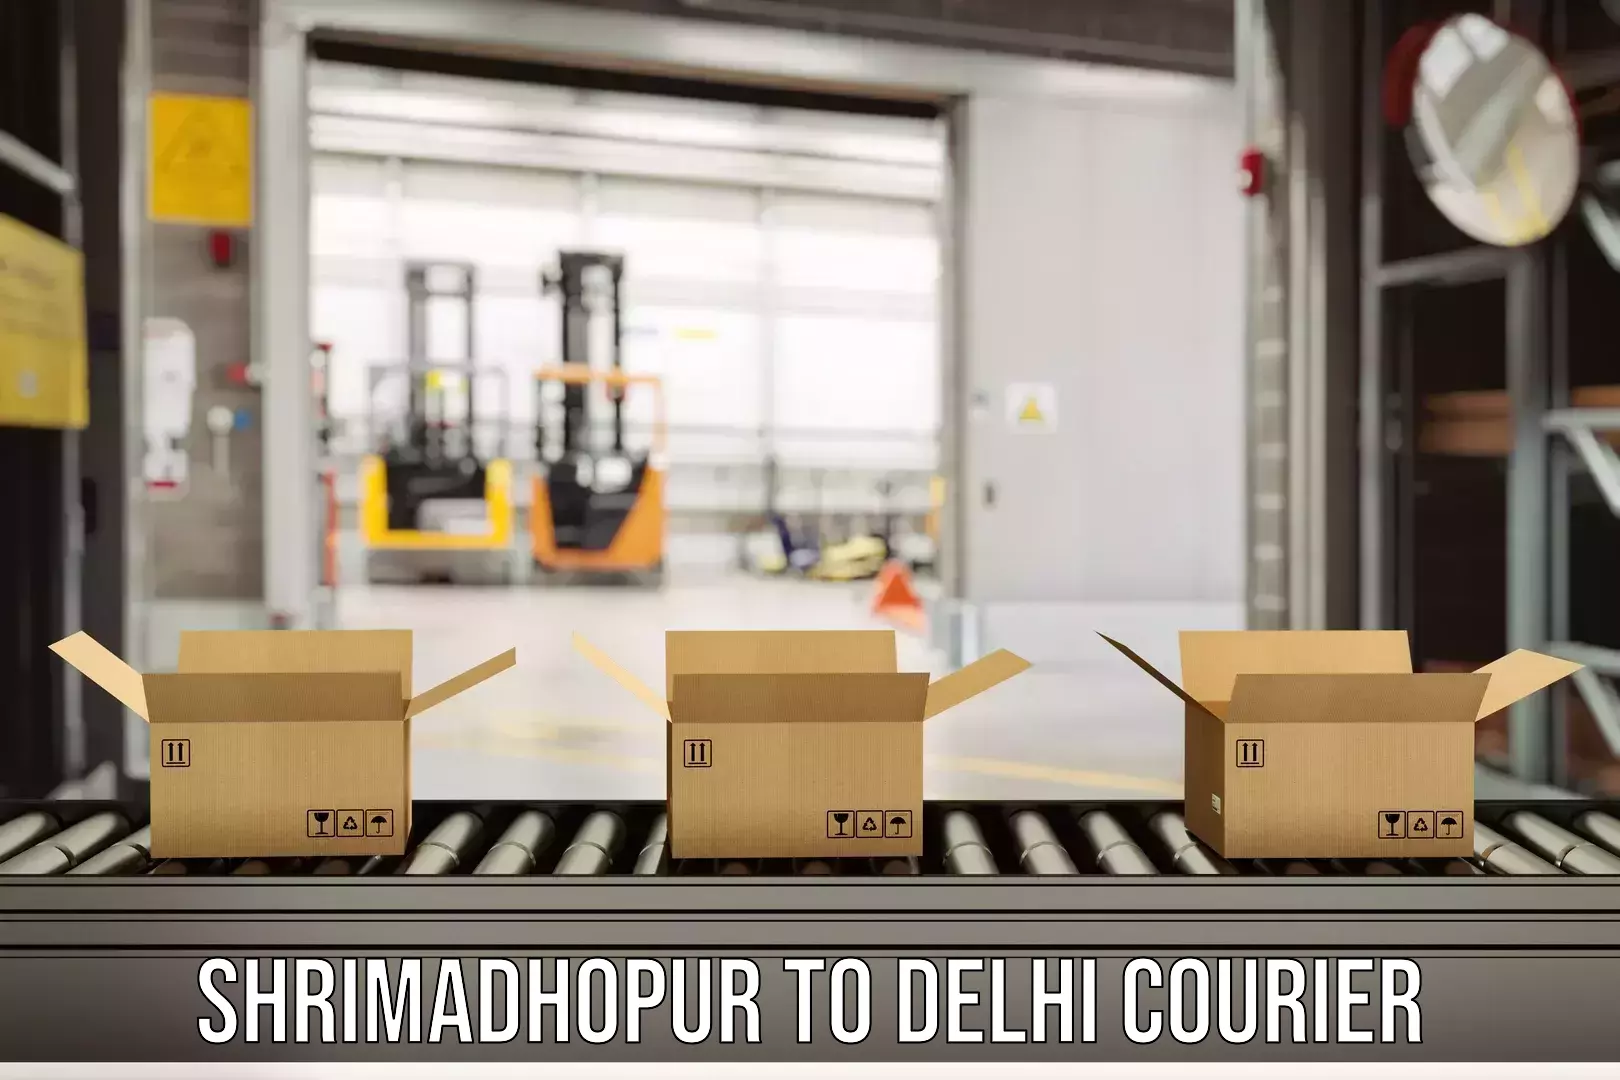 Courier service comparison Shrimadhopur to NIT Delhi